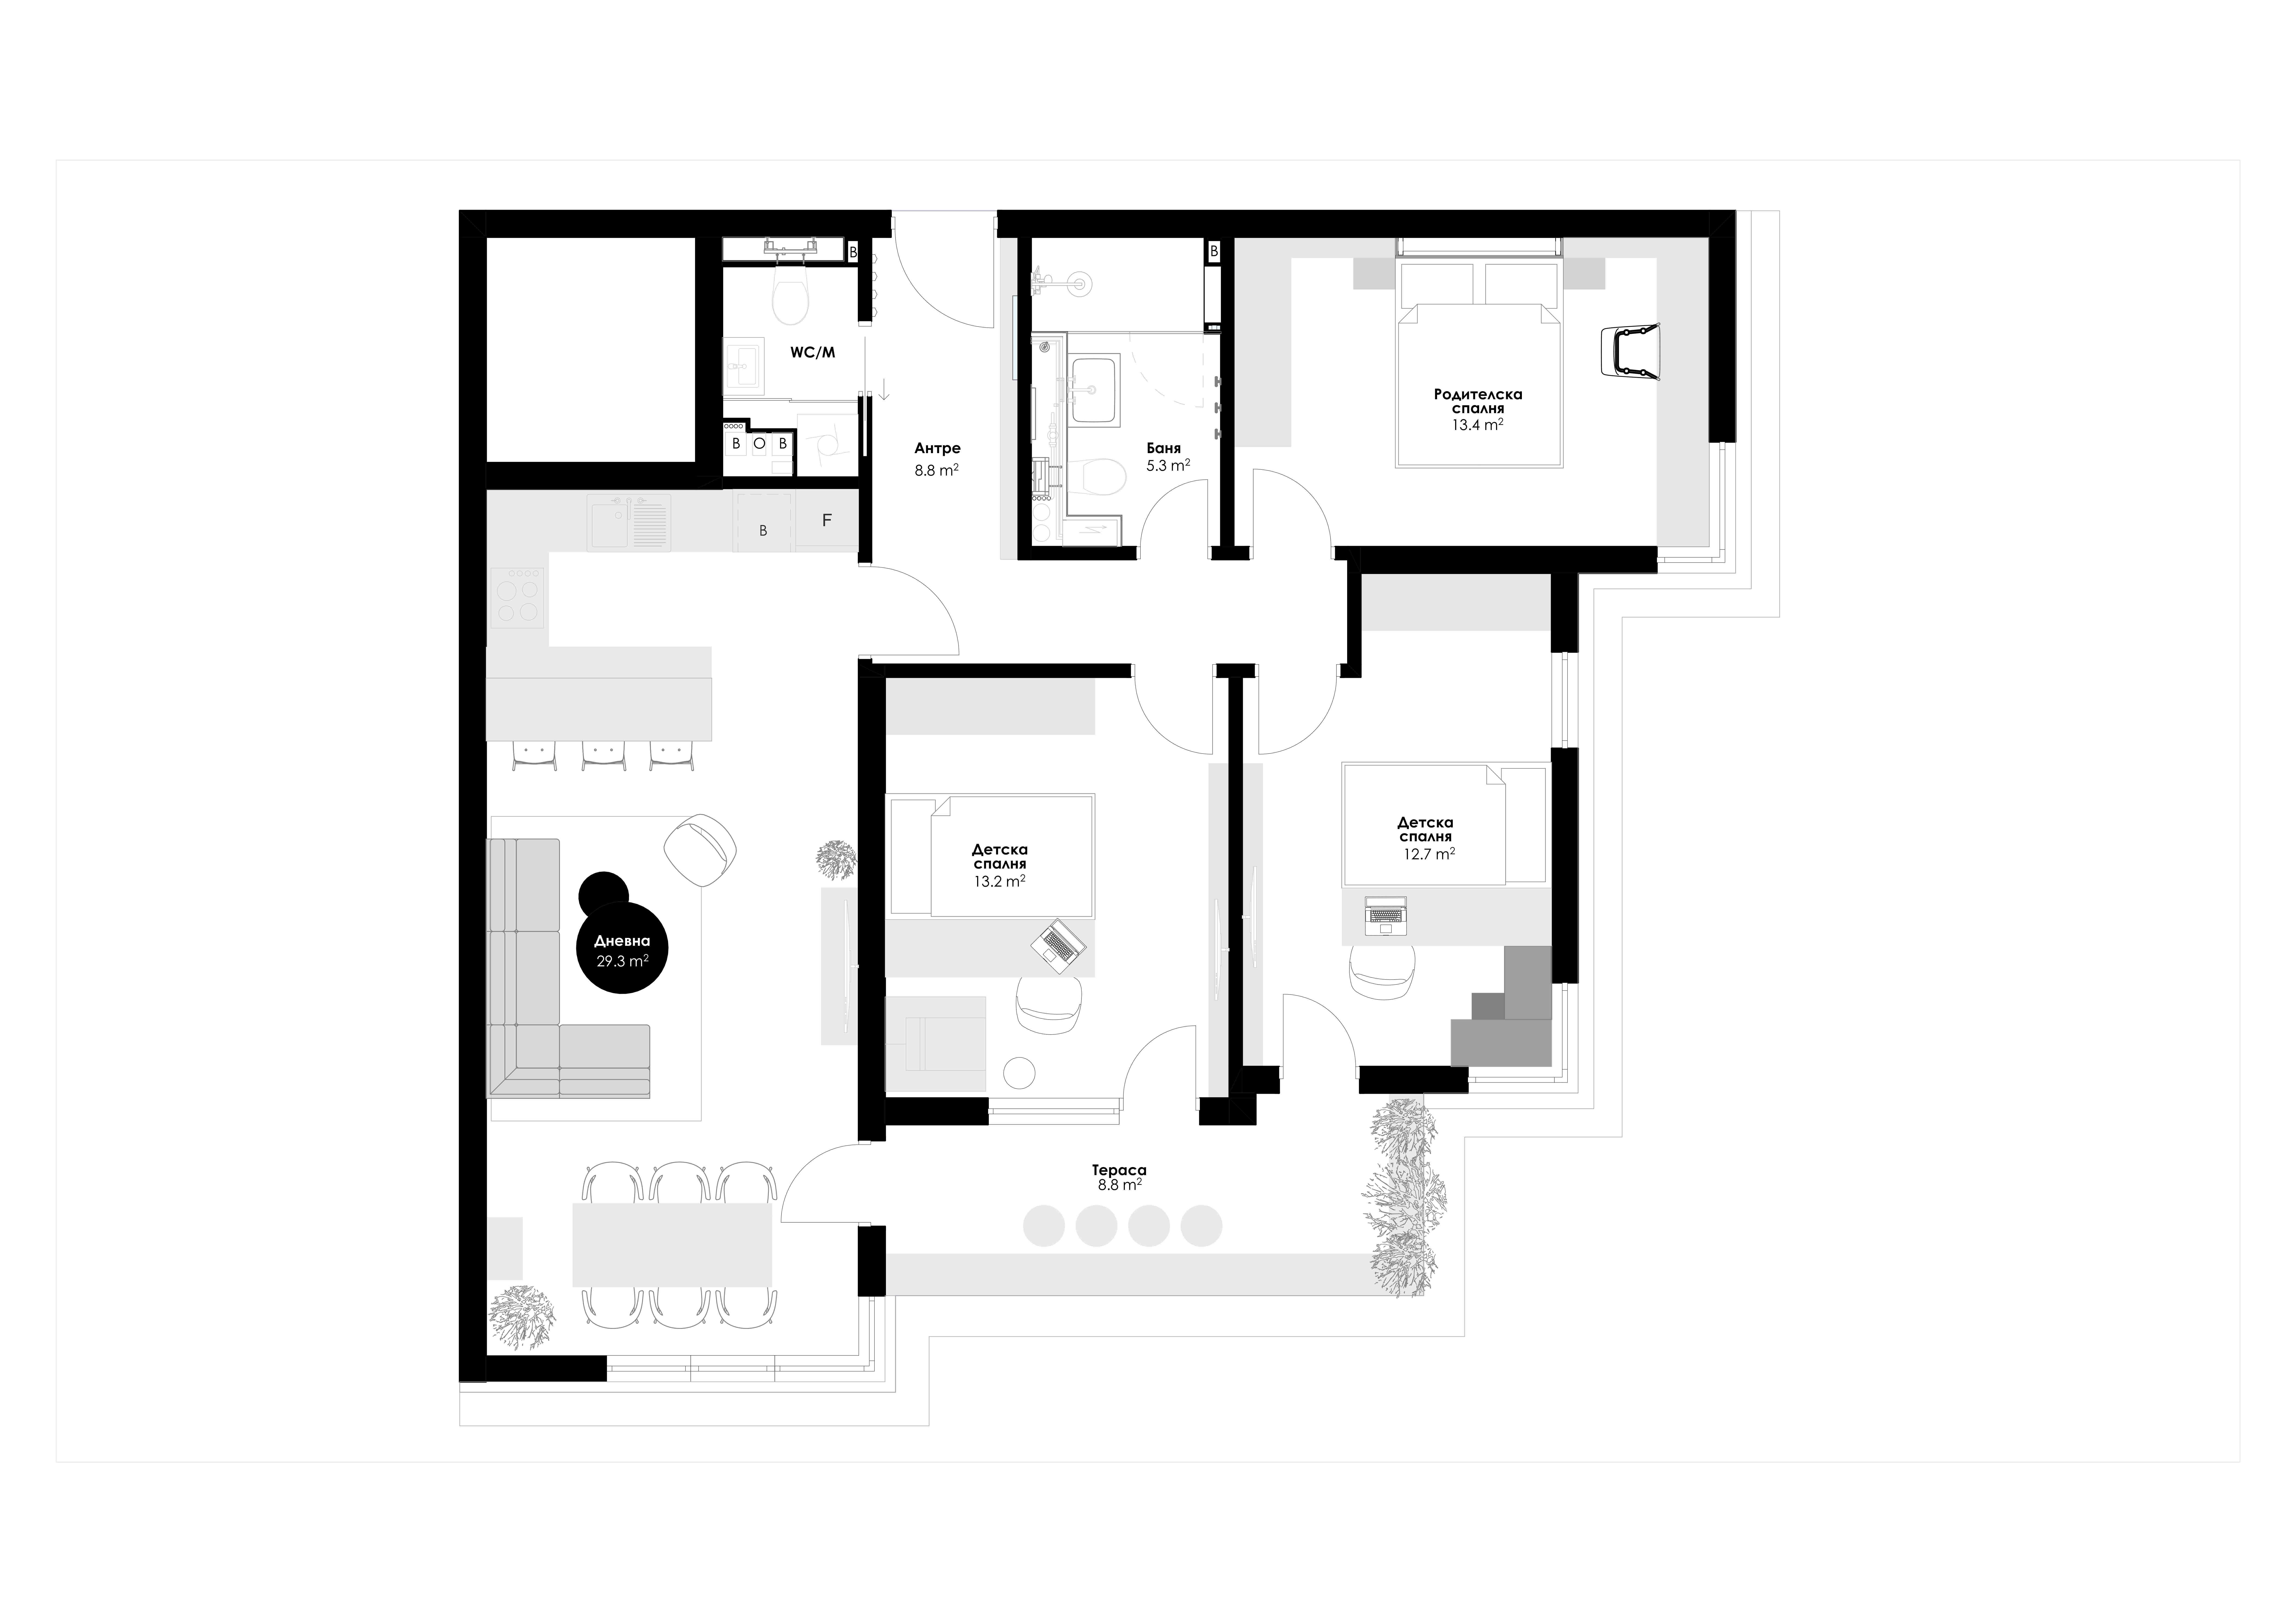 287-апартамент-б-шест-9-разпределение-интериорен-дизайн-пловдив-16623913527193.jpg